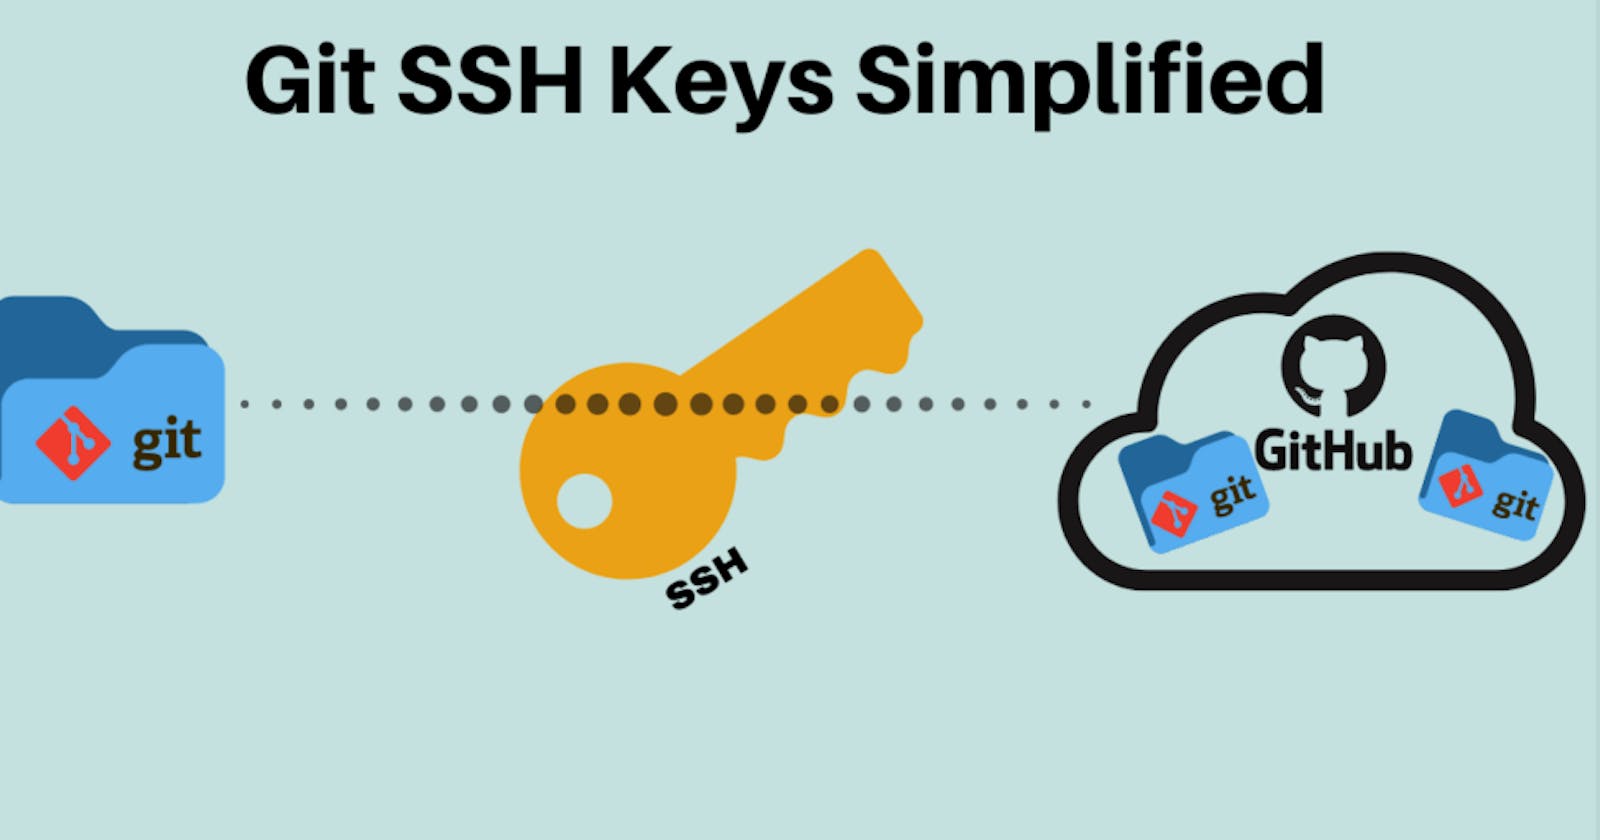 Generating new SSH keys for your github